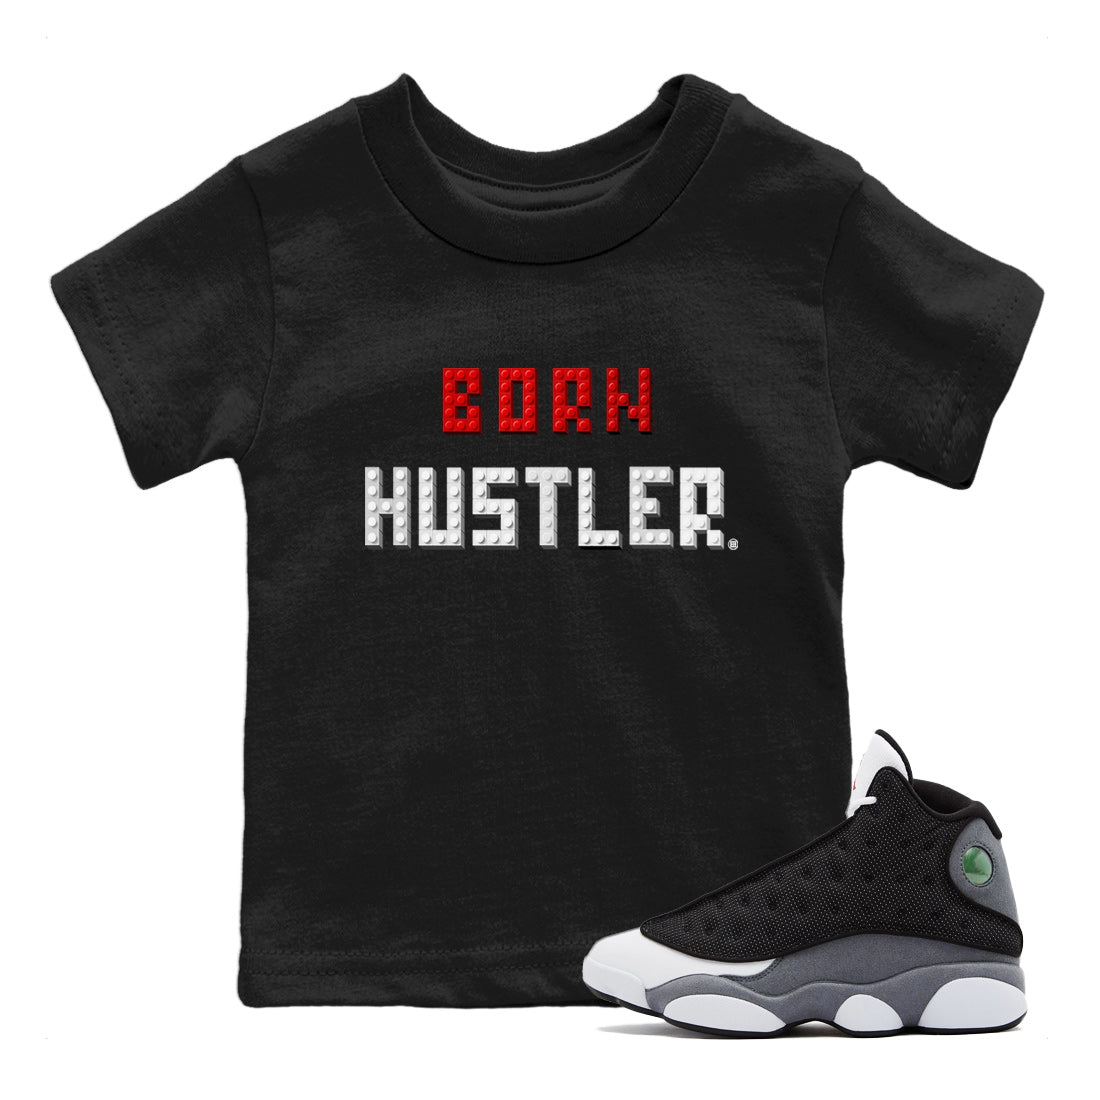 Air Jordan 13 Black Flint Sneaker Match Tees Brick Born Hustler t shirt Air Jordan 13 Retro Black Flint Sneaker Tees Kids Shirts Black 1